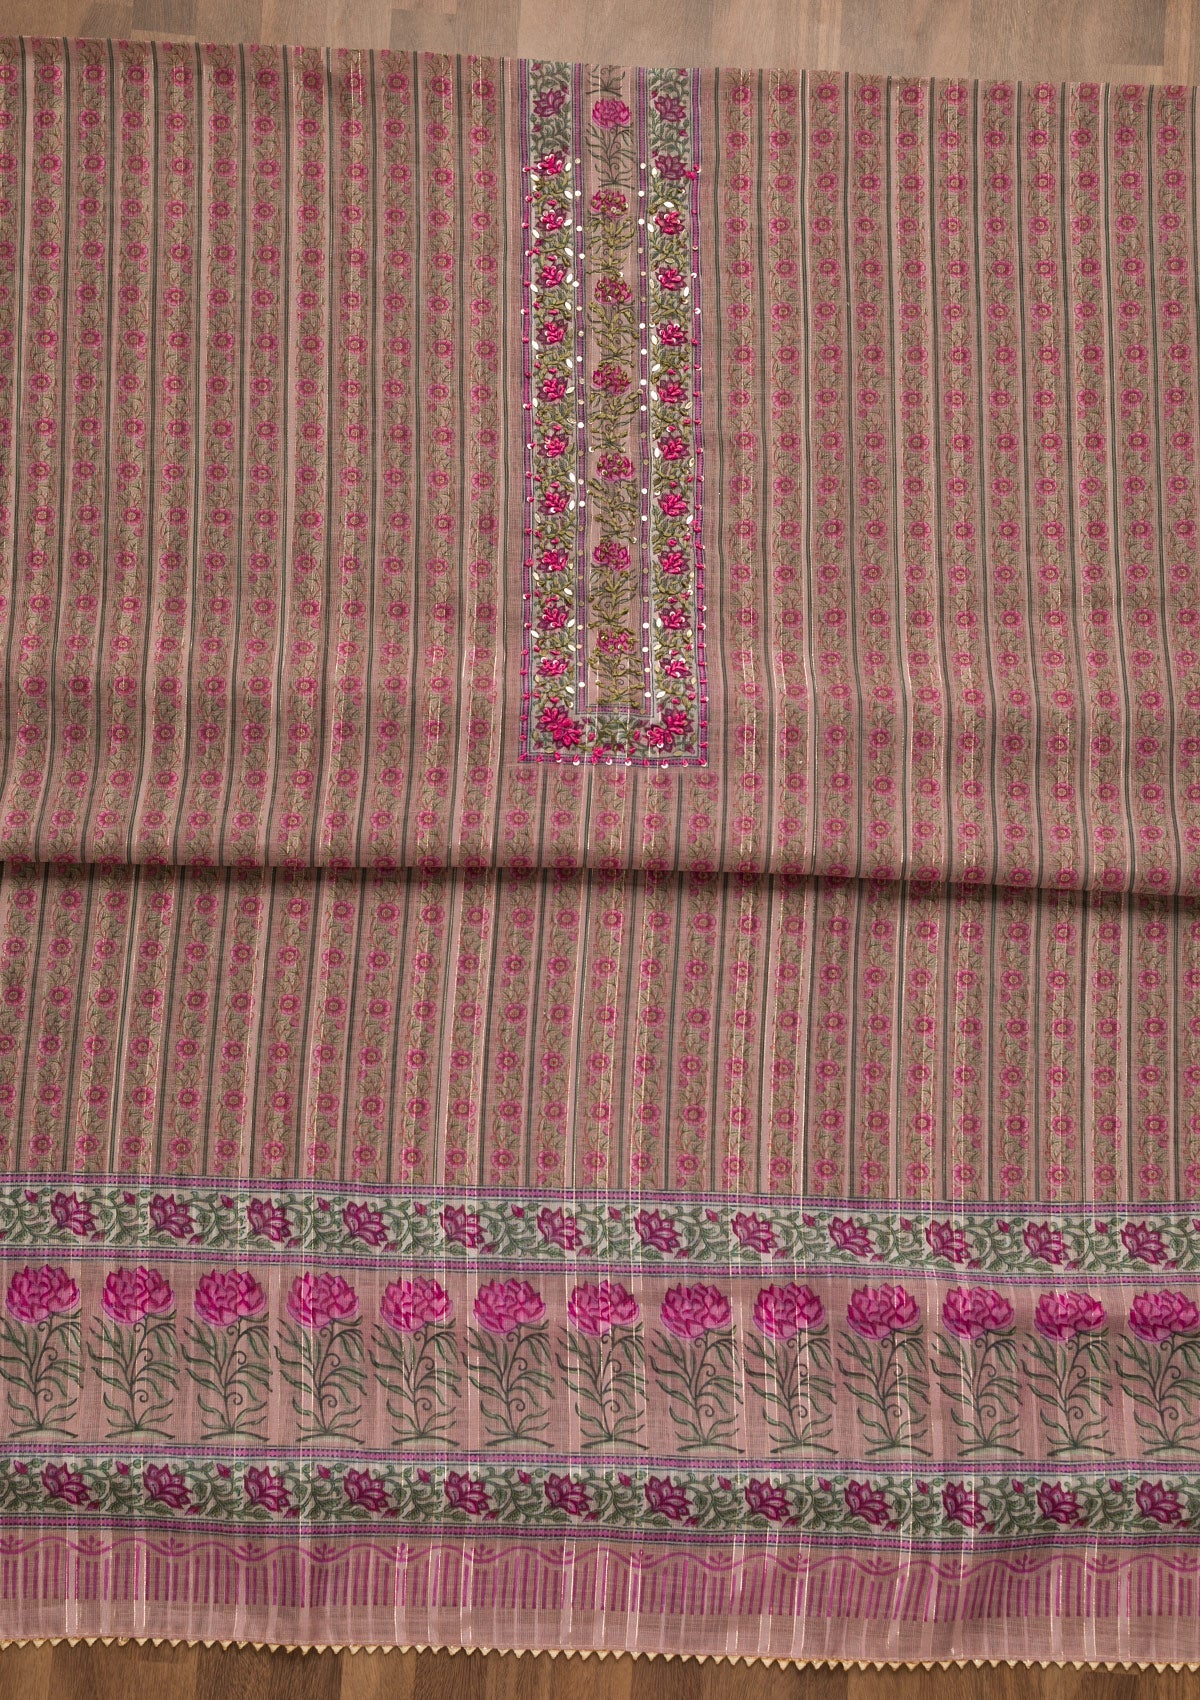 Lavender Threadwork Chanderi Unstitched Salwar Suit